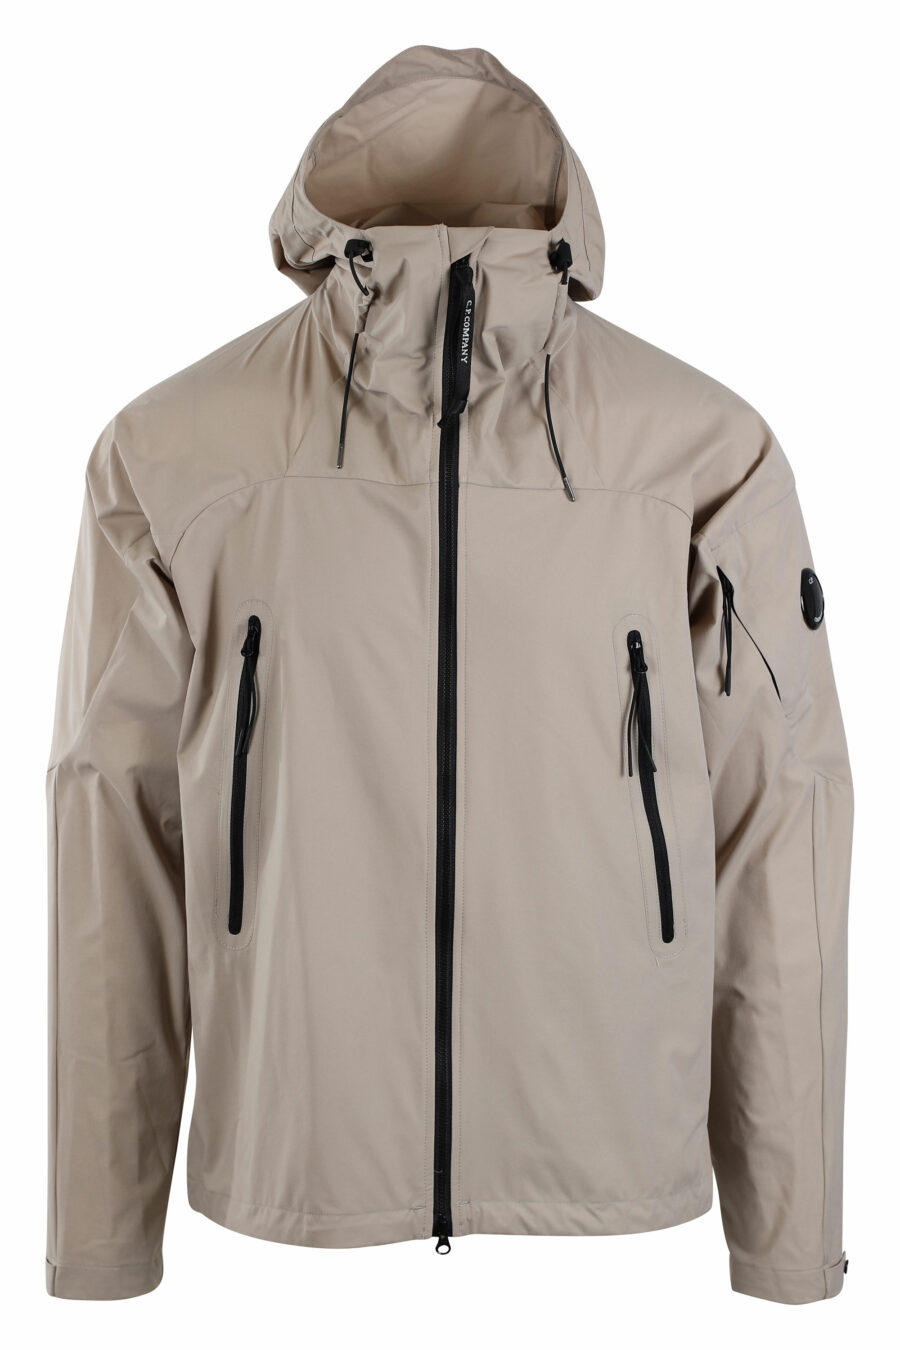 Beigefarbene "pro-tek" Jacke mit Kapuze und kreisförmigem Mini-Logo an der Seite - IMG 2666